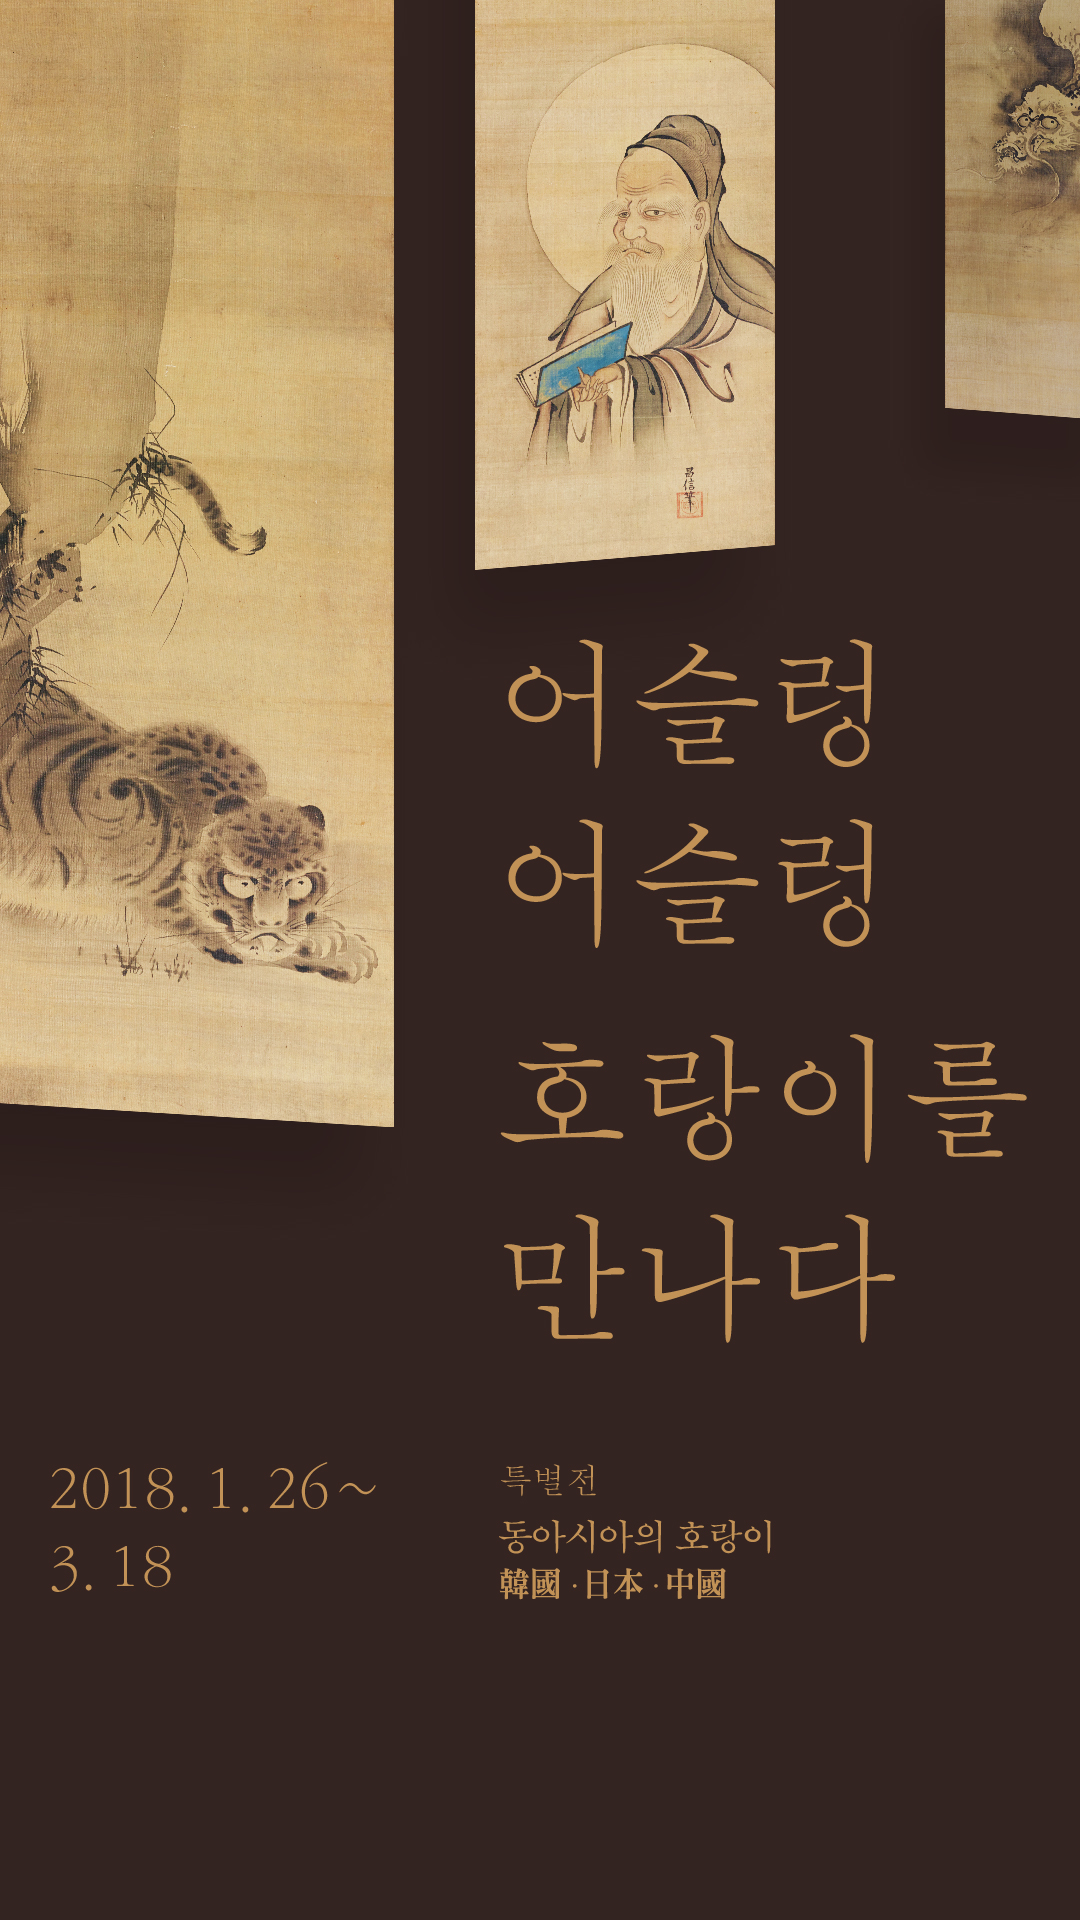 어슬렁 어슬렁 호랑이를 만나다 특별전: 동아시아의 호랑이(한국, 일본, 중국)